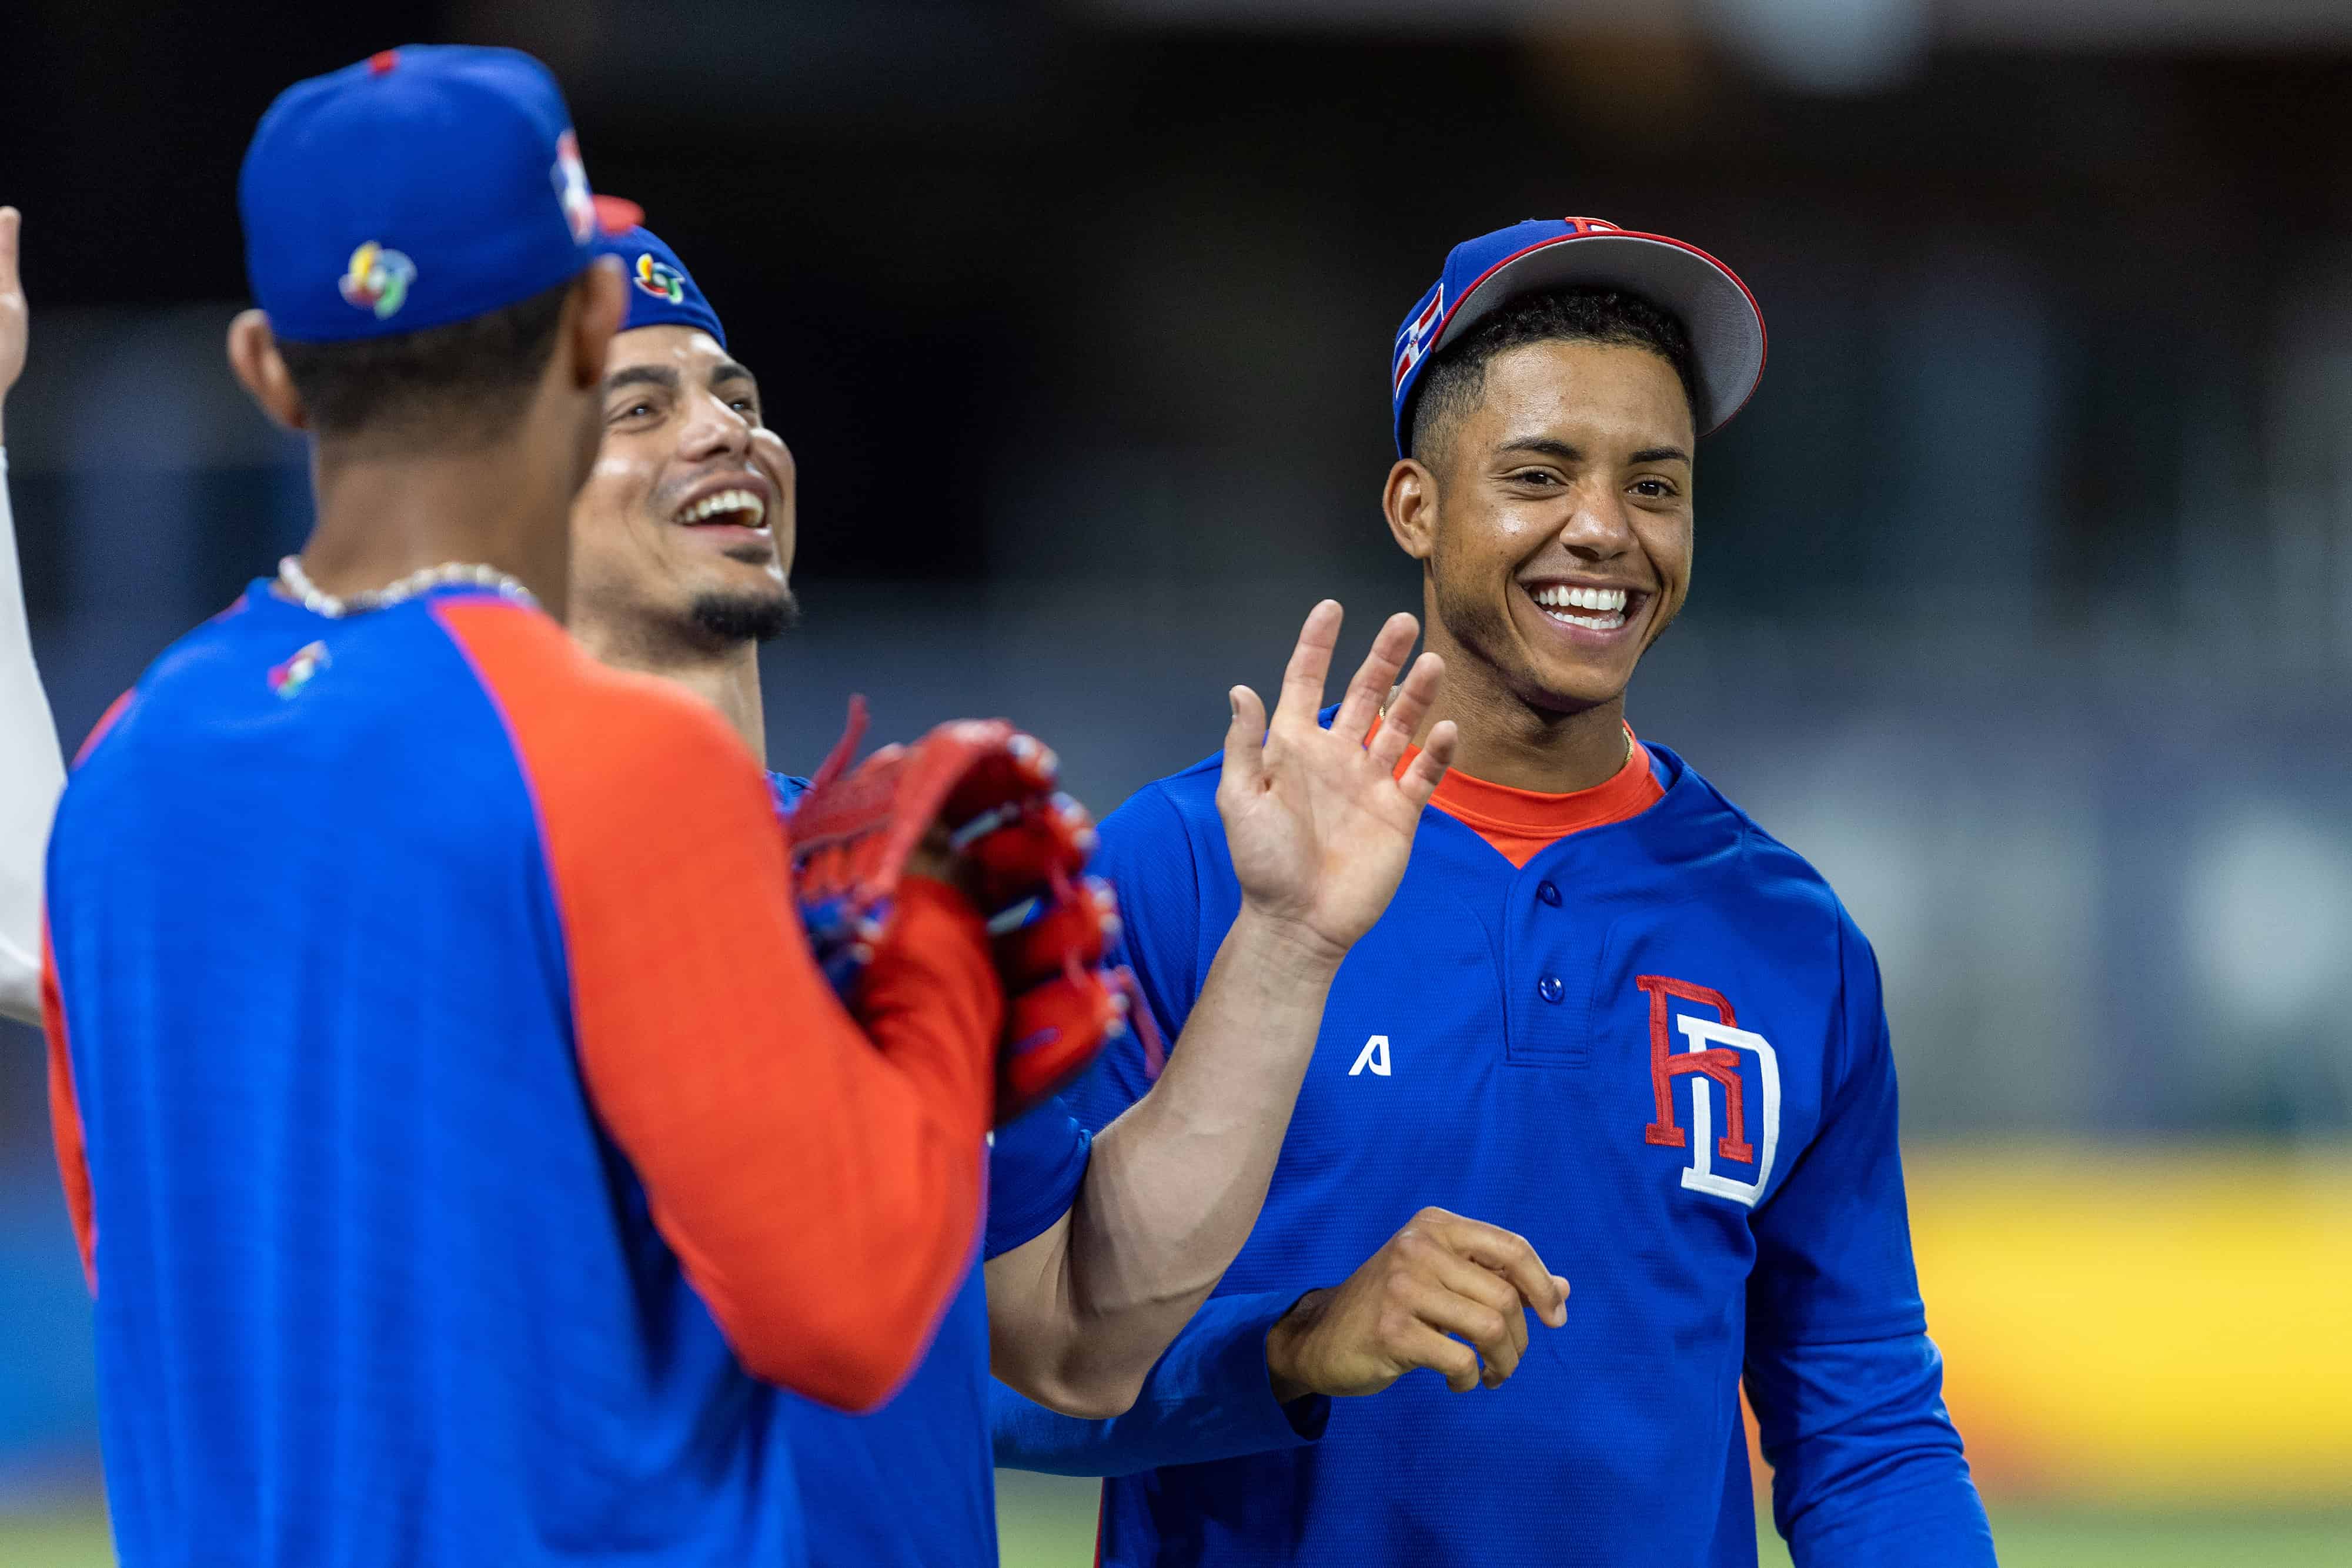 Jeremy Peña bromeó al borde del diamante durante la práctica oficial de República Dominicana, antes del debut en el Clásico Mundial de Béisbol 2023.